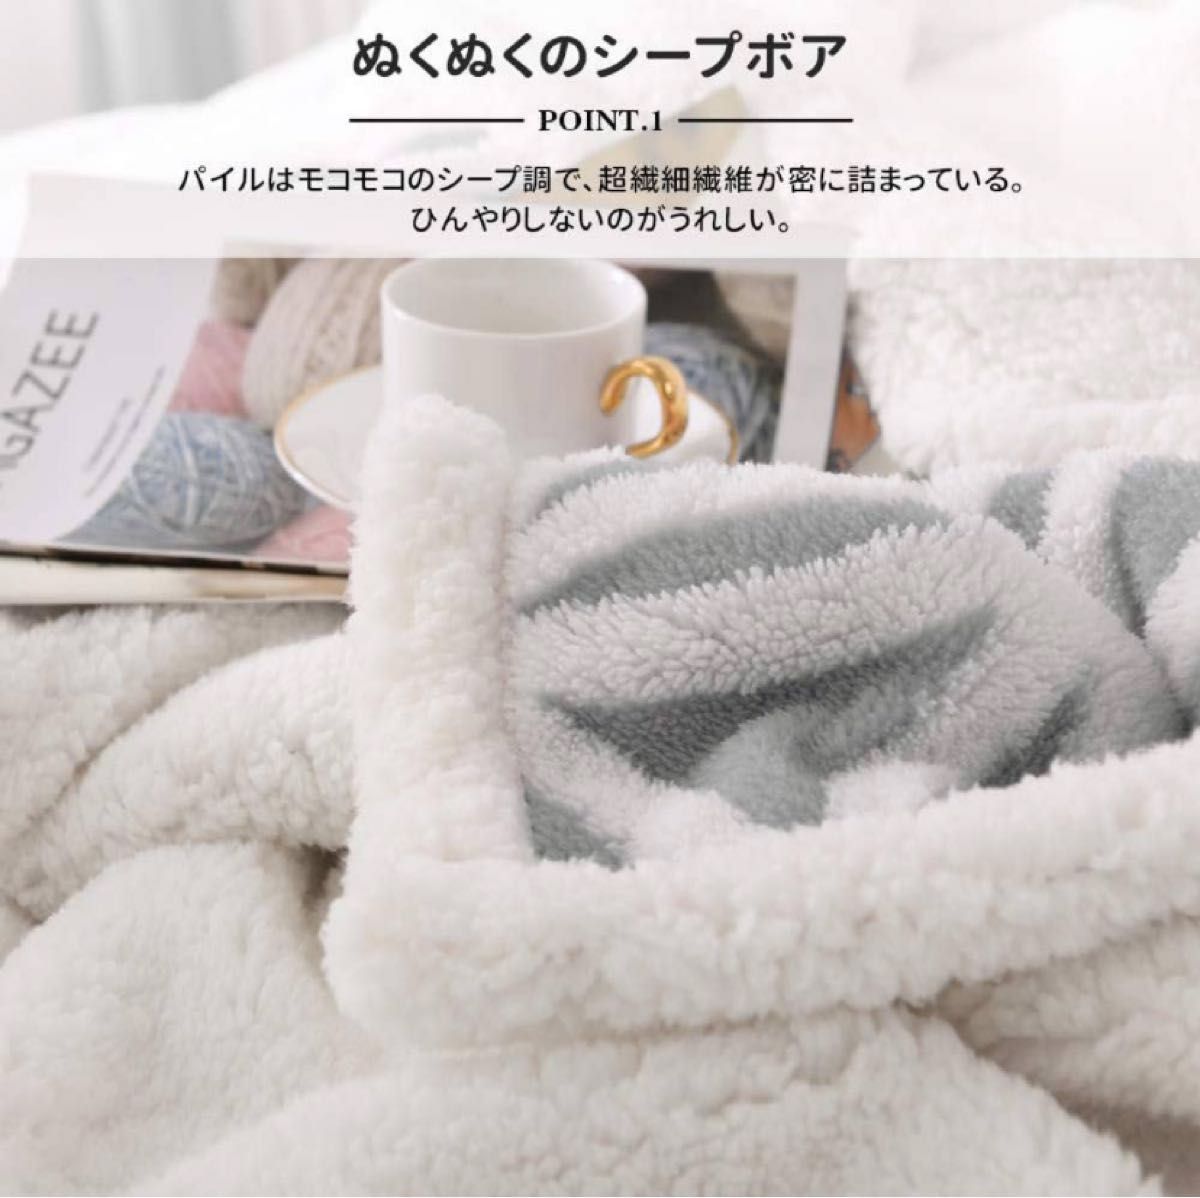 KAWAHOME 二枚合わせ 毛布 ダブル 180ⅹ200cm 掛け毛布 マイクロファイバー かわいい おしゃれ 北欧風  雪柄